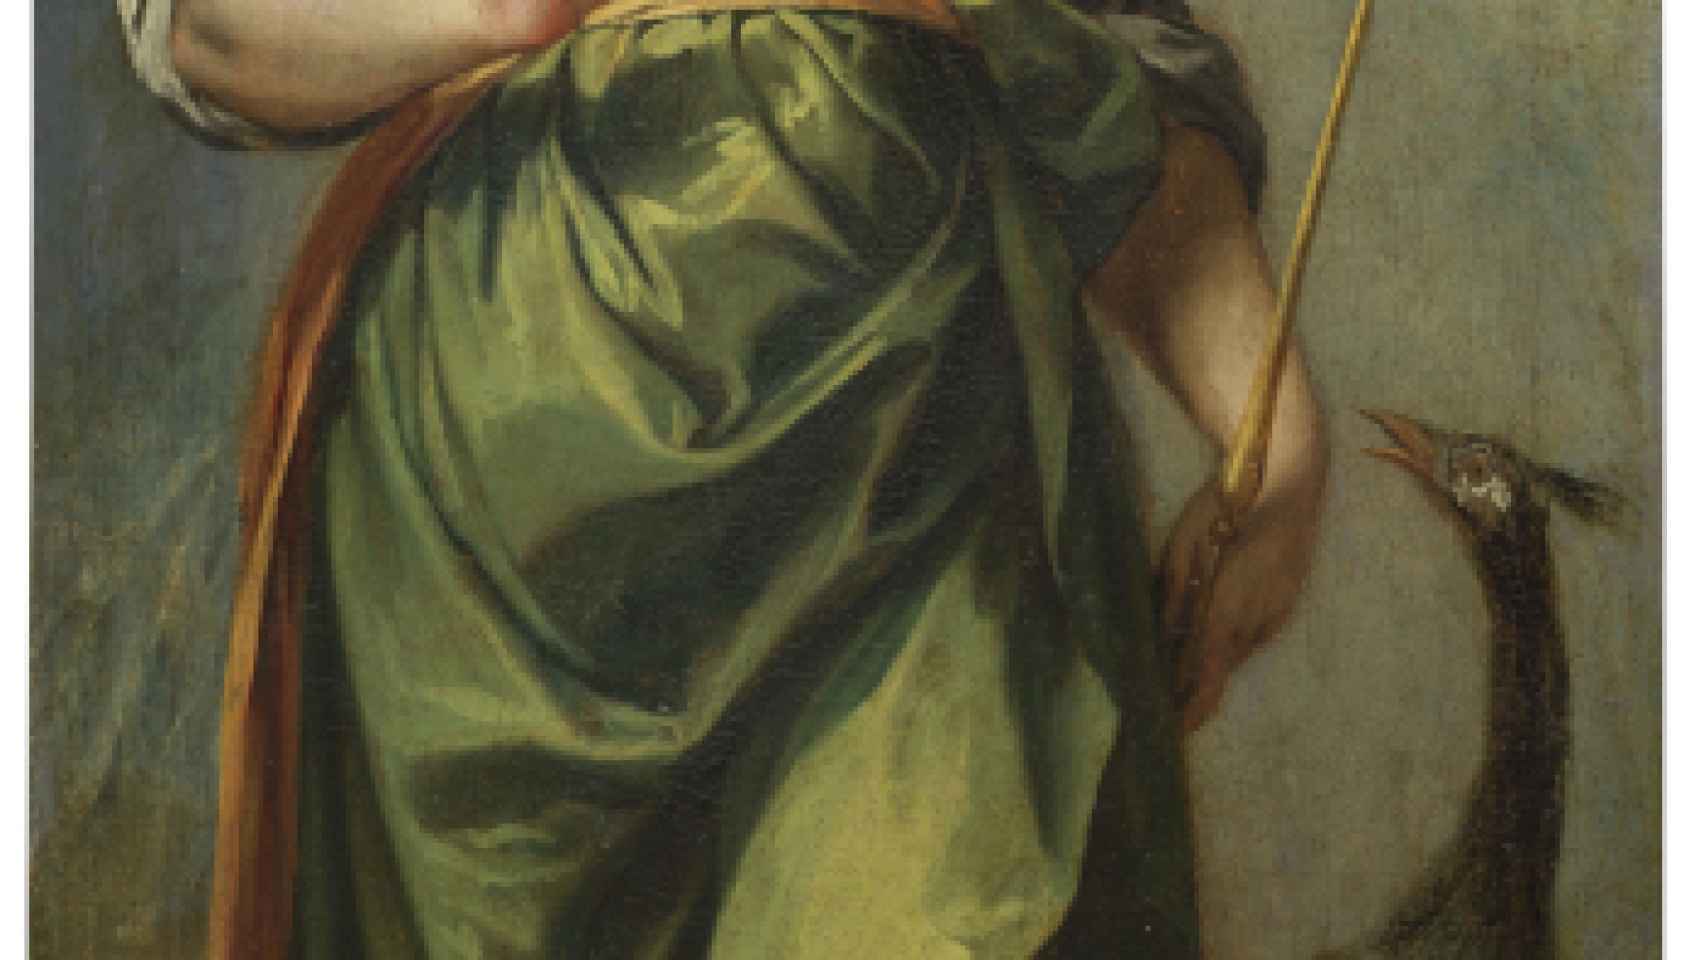 Alonso Cano: 'La diosa Juno', 1638-1651, adquirida por el Museo del Prado